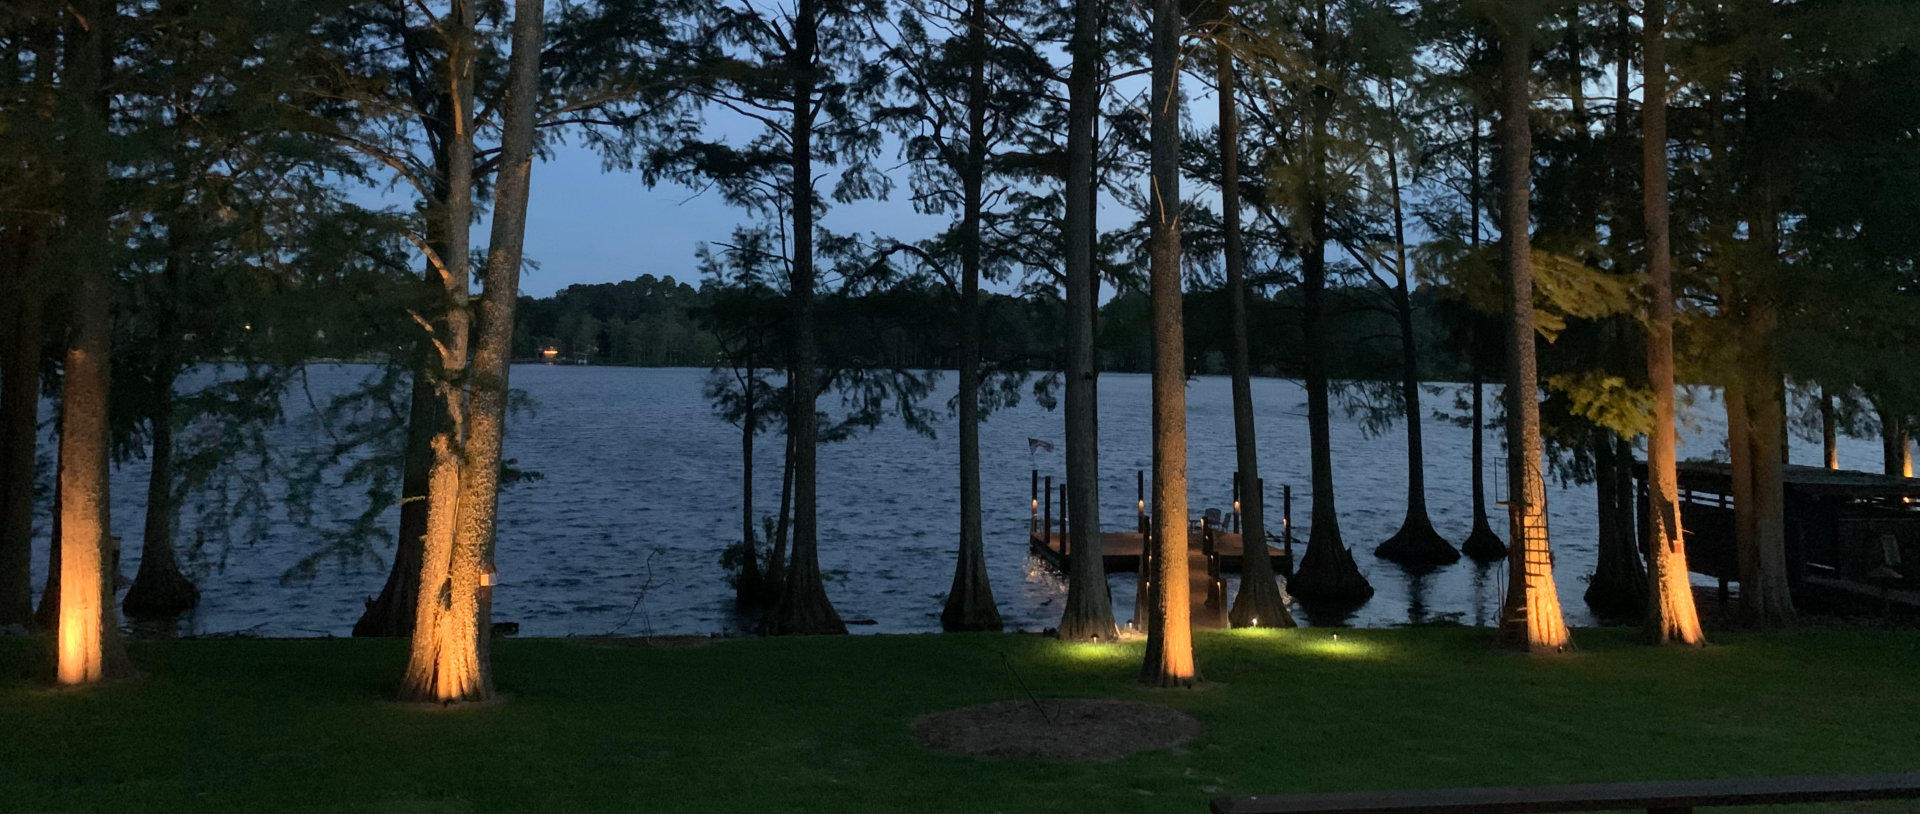 Landscape Lighting on a lake Dock at dusk.